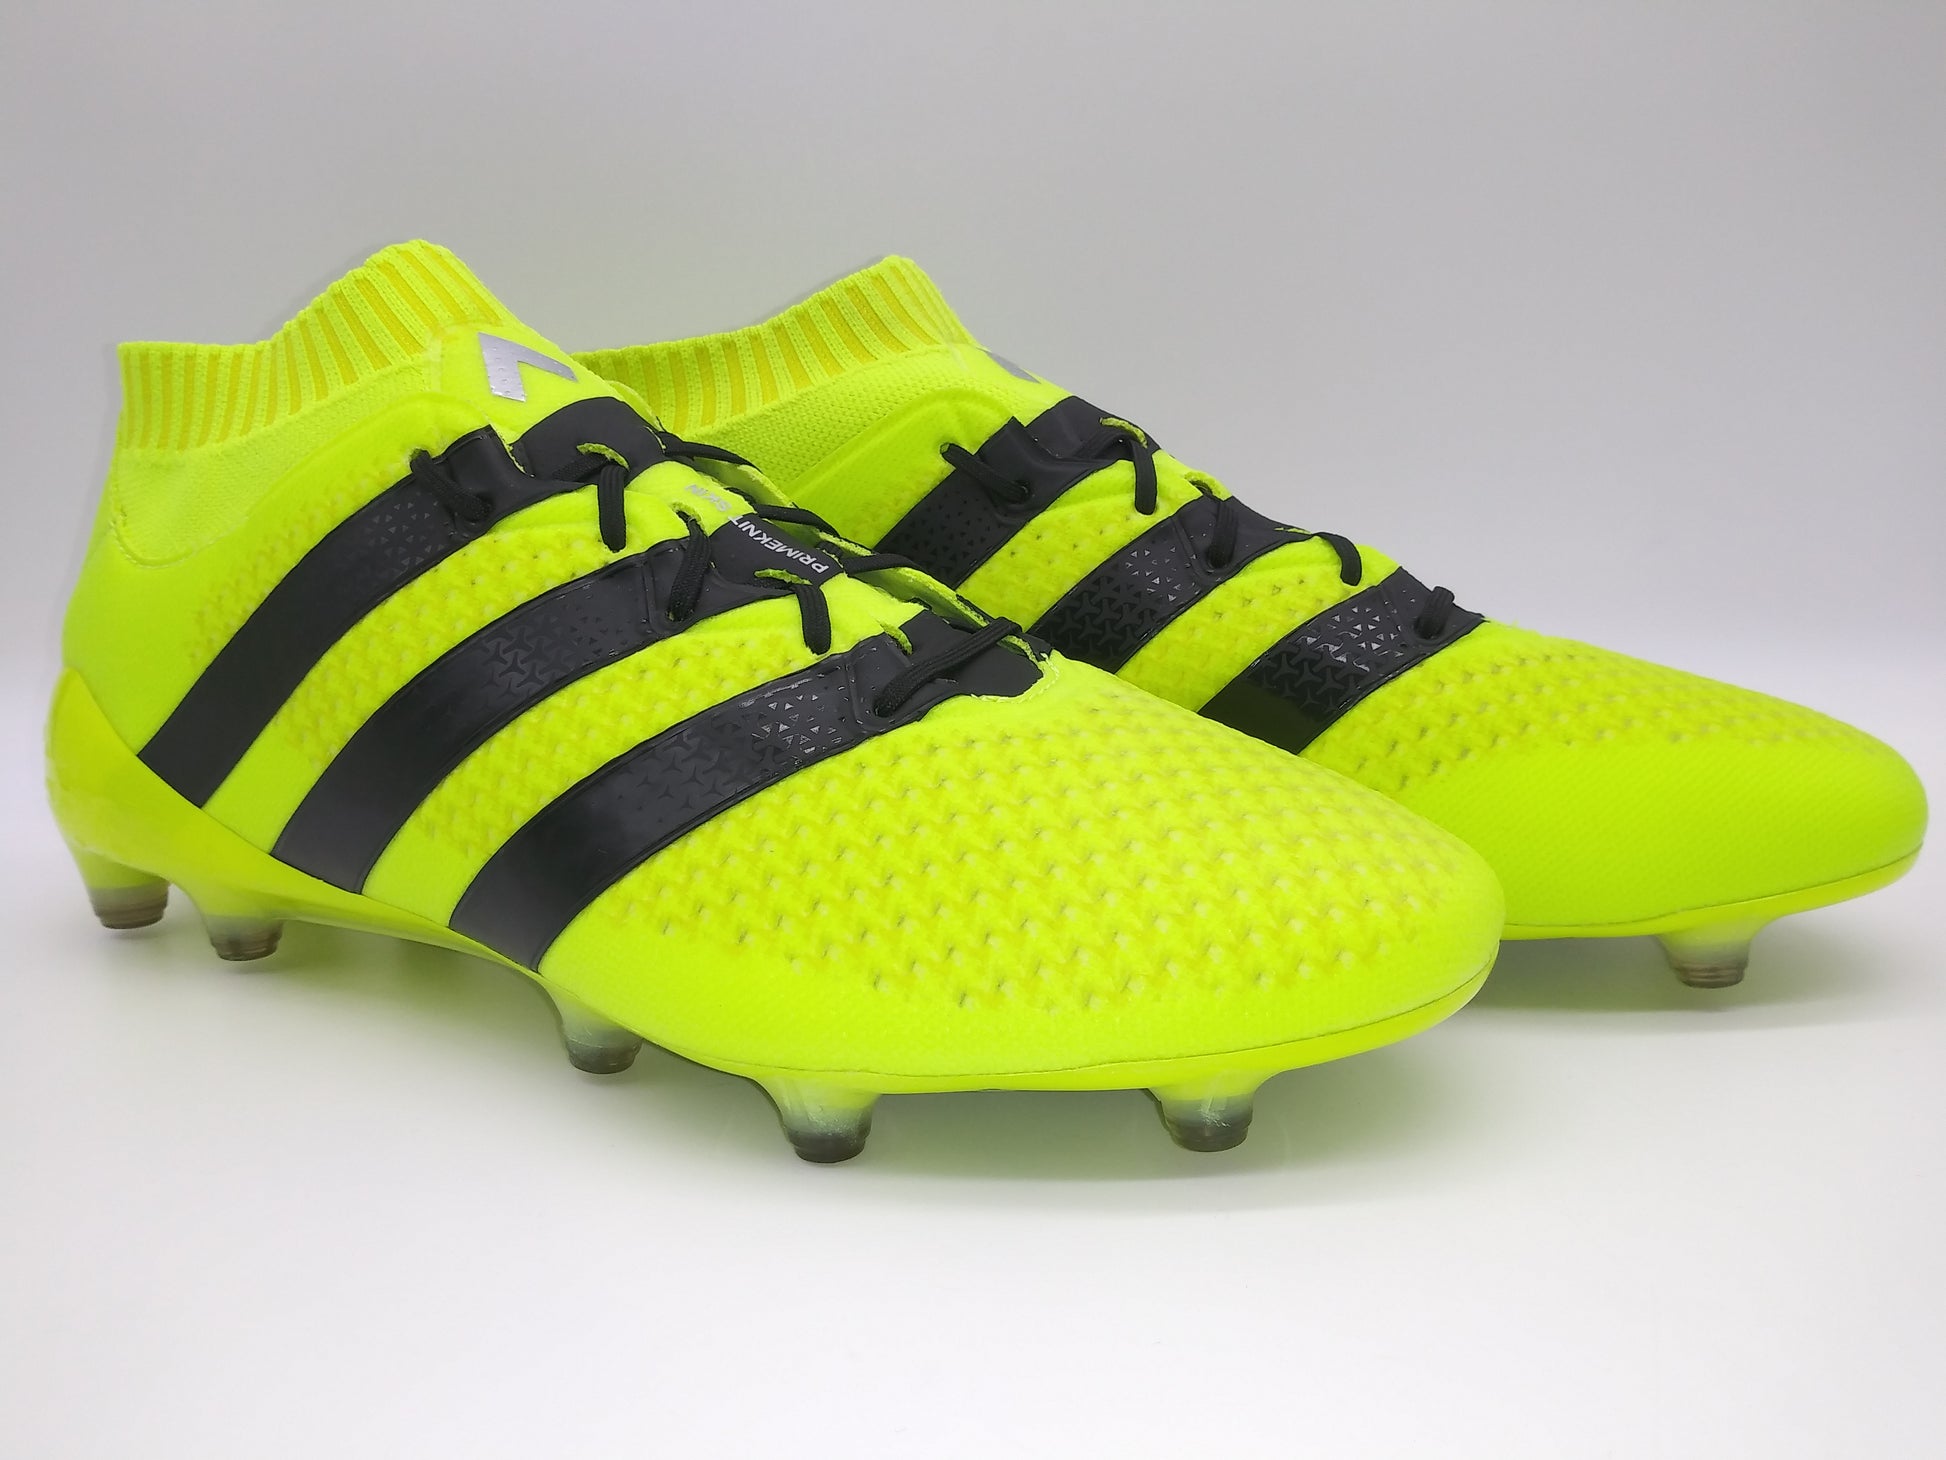 Absay con las manos en la masa ironía Adidas ACE 16.1 Primeknit FG Yellow Black – Villegas Footwear